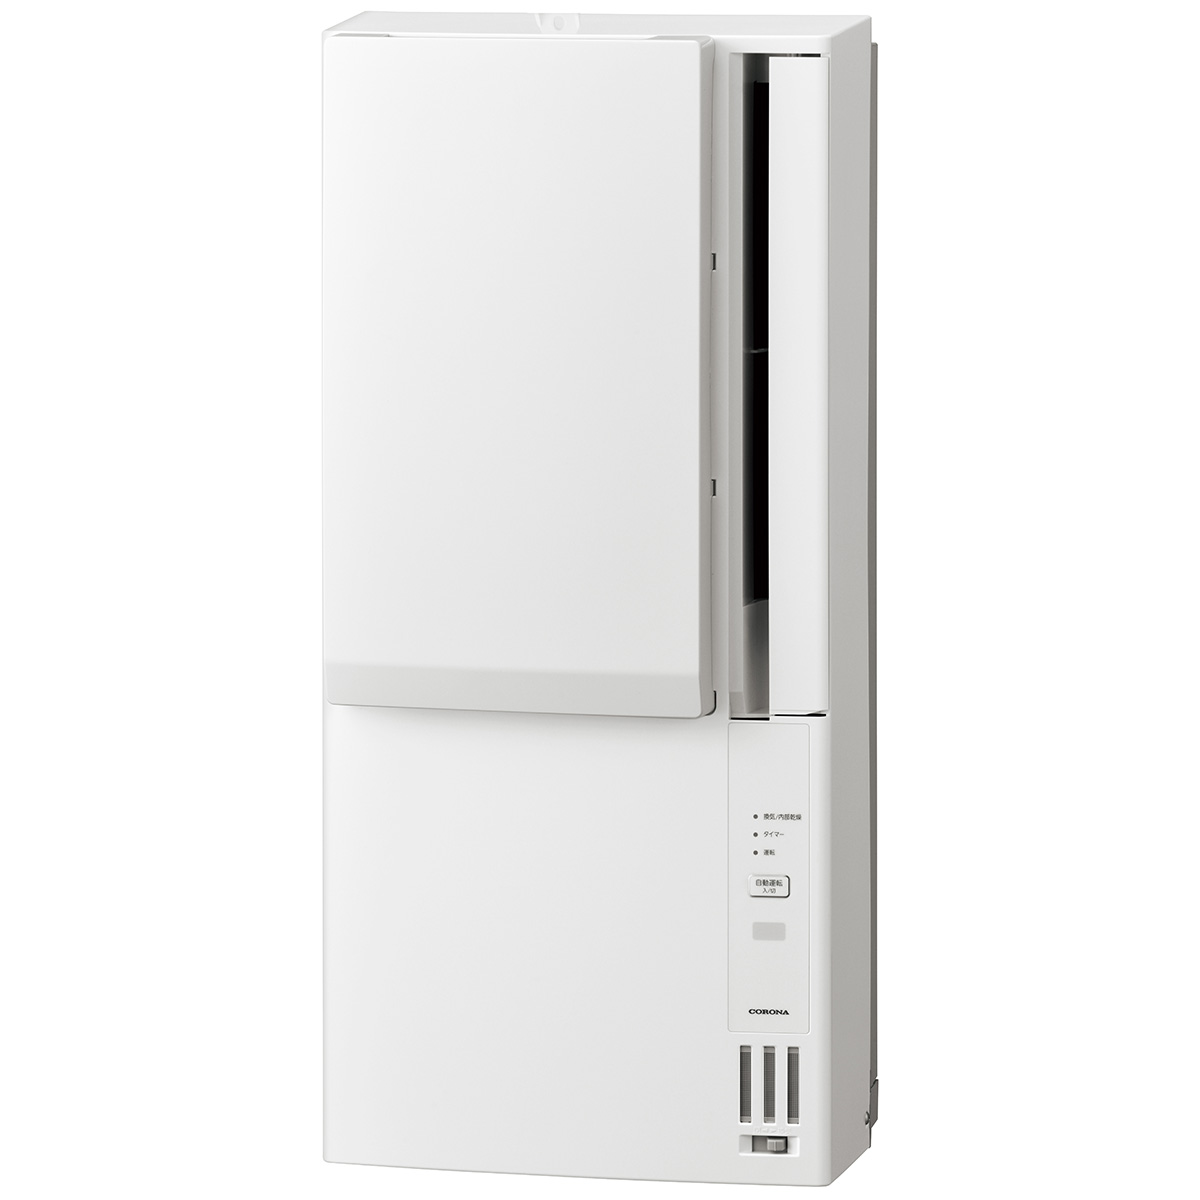 ウインドエアコン(窓用エアコン) 冷暖房兼用 ReLaLa おもに4.5-7畳用